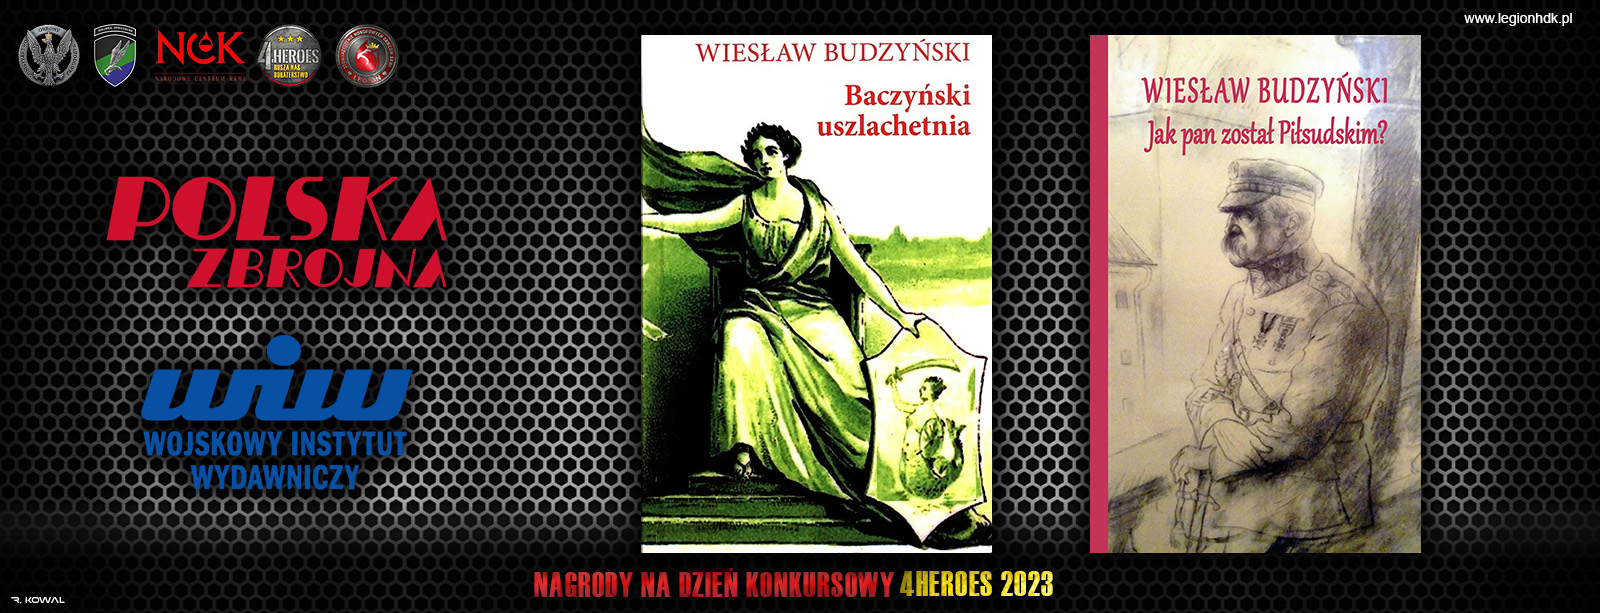 polska zbrojna wiw nagrody kampanii 4HEROES 2023 legionhdk